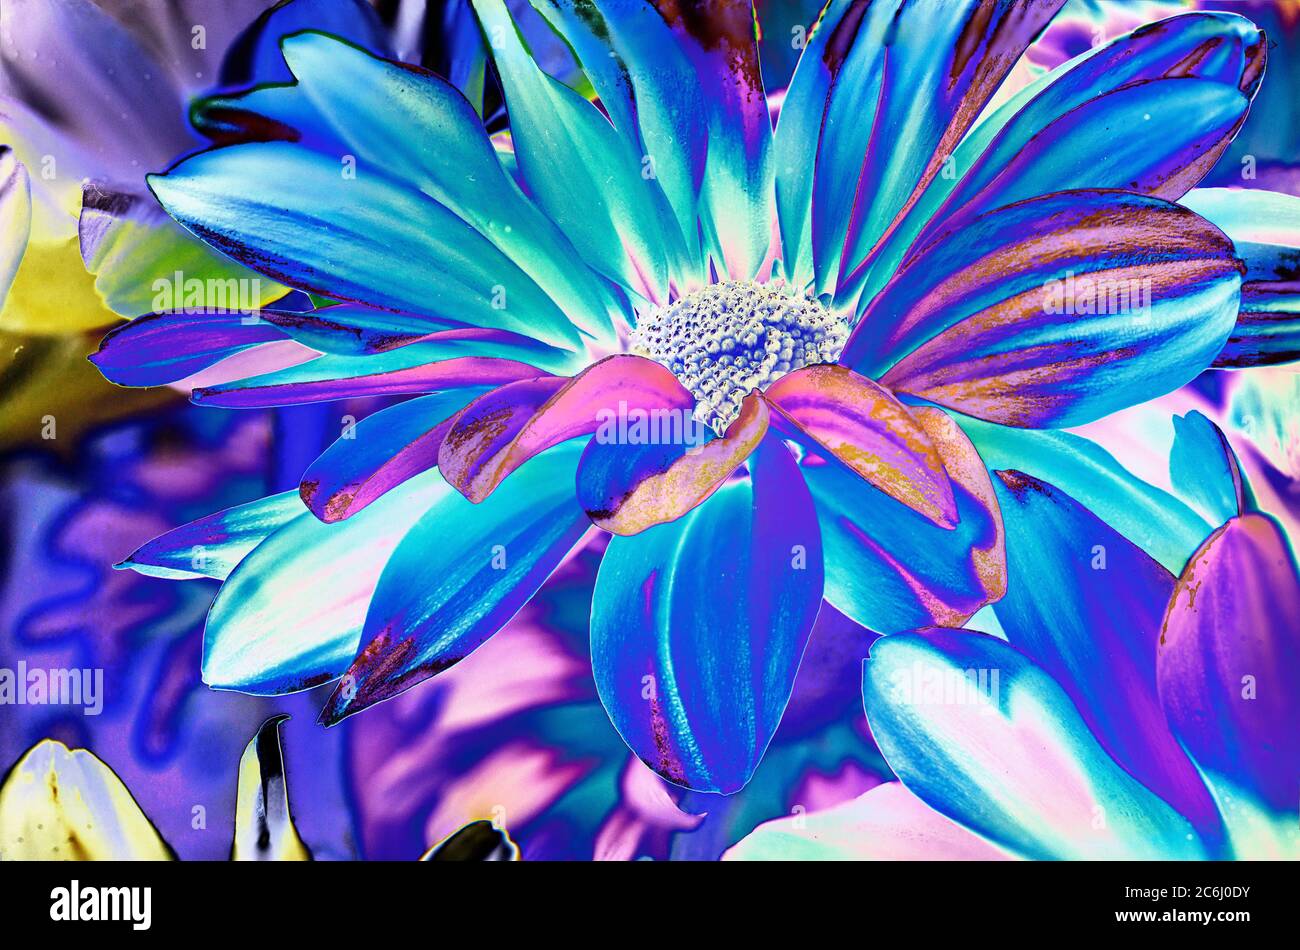 Digital manipuliertes Makroblumenbild. Psychedelisch, brillante Farben. Konzeptionell. Grüne und blaue Schattierungen, Gänseblümchen-Blütenköpfe Anordnung. Stockfoto